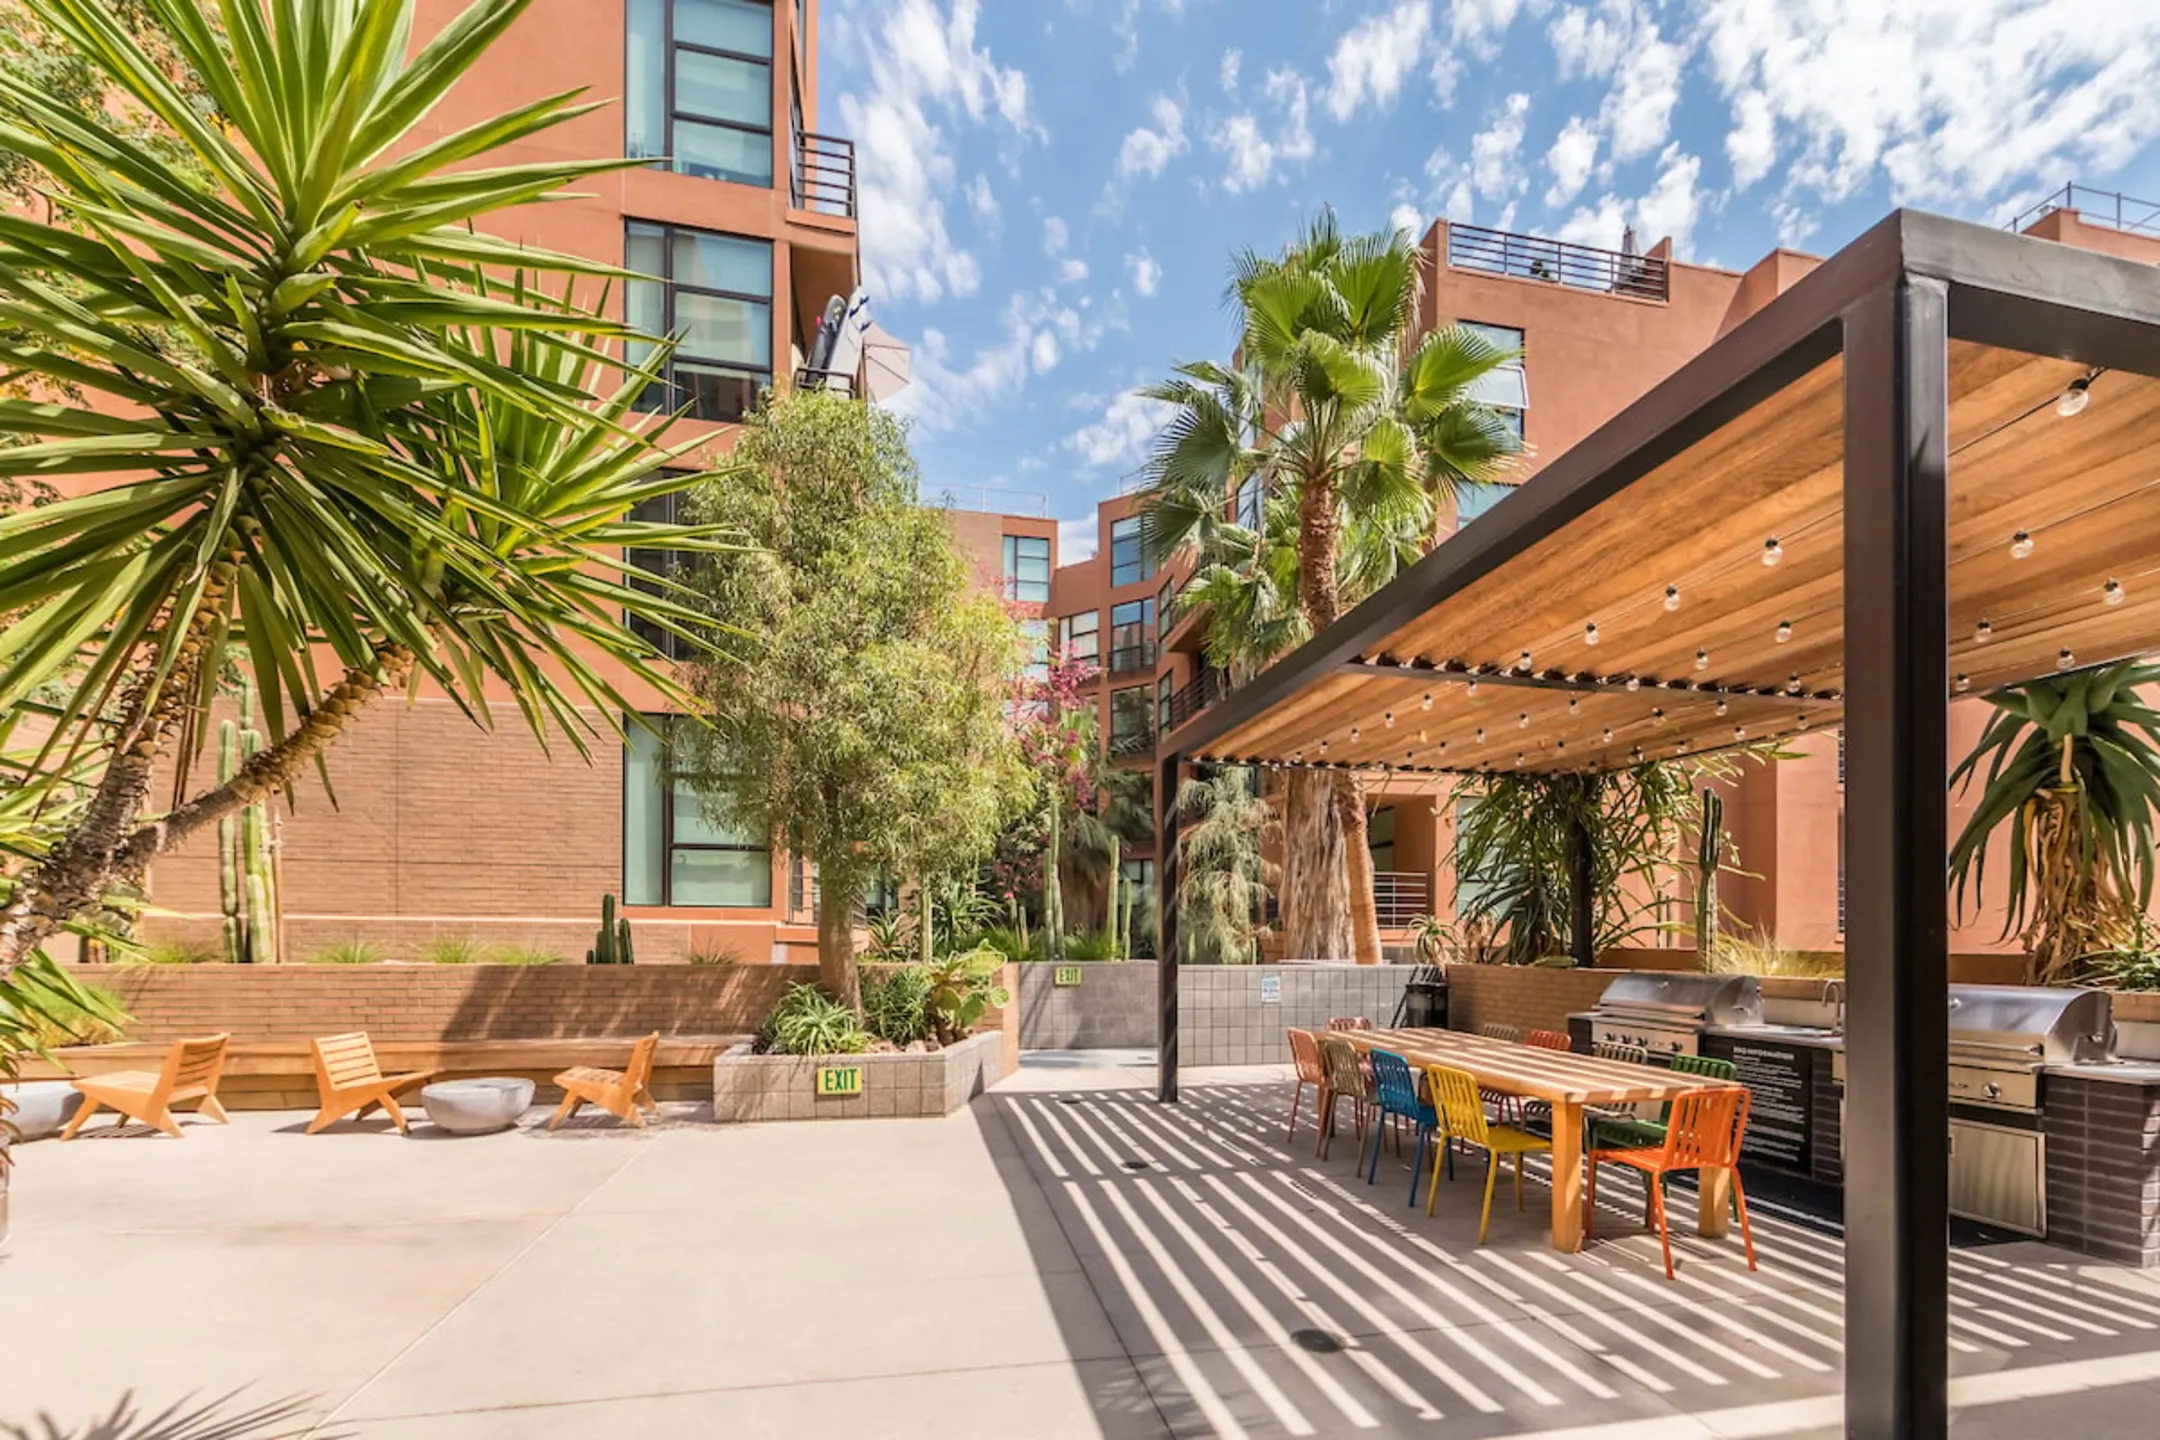 El Centro Apartments & Bungalows - Los Angeles, CA